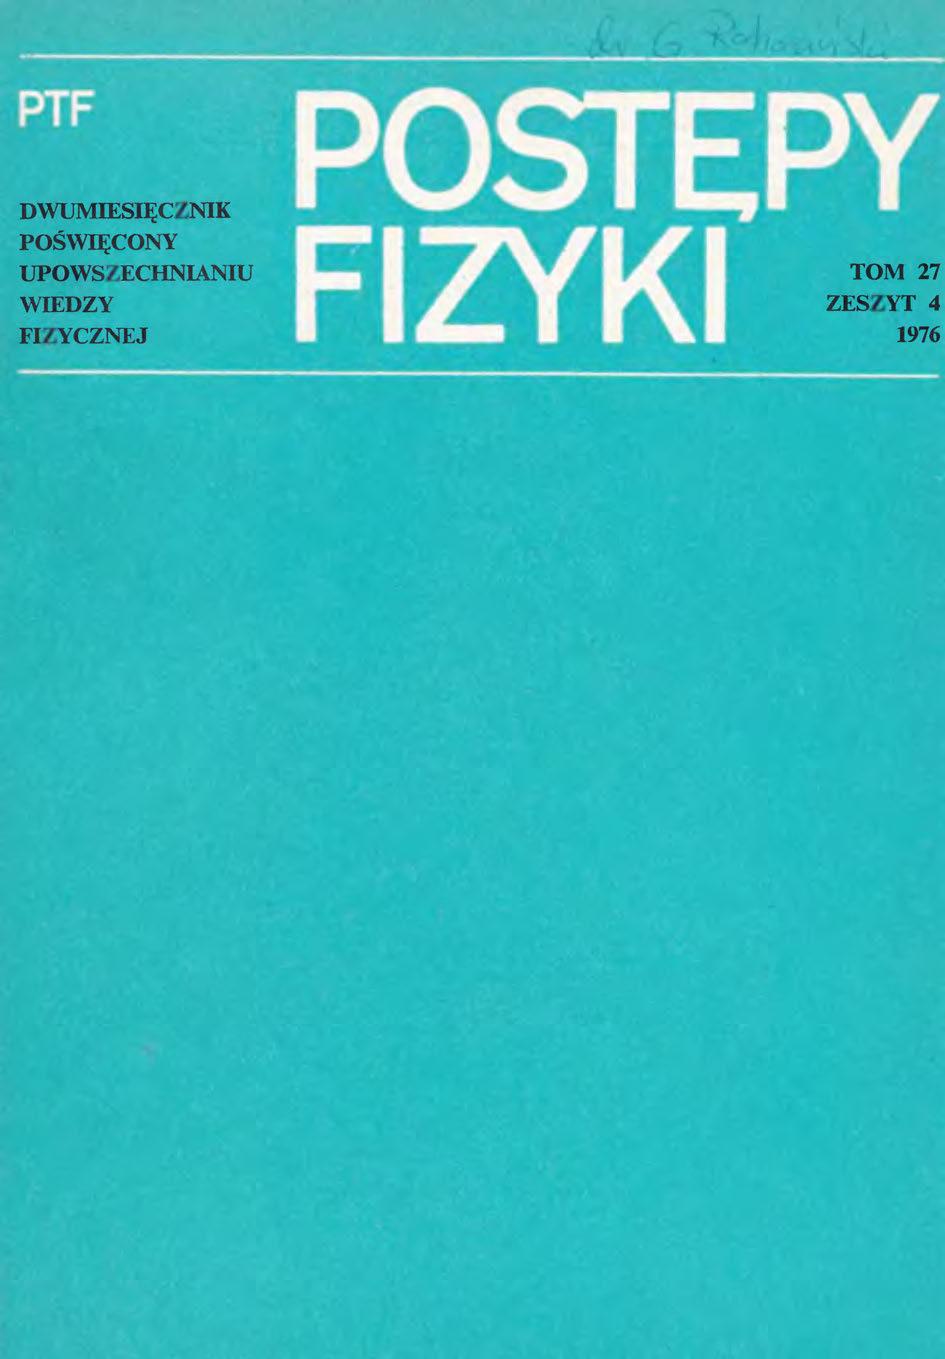 Postępy Fizyki 27 (4) 1976